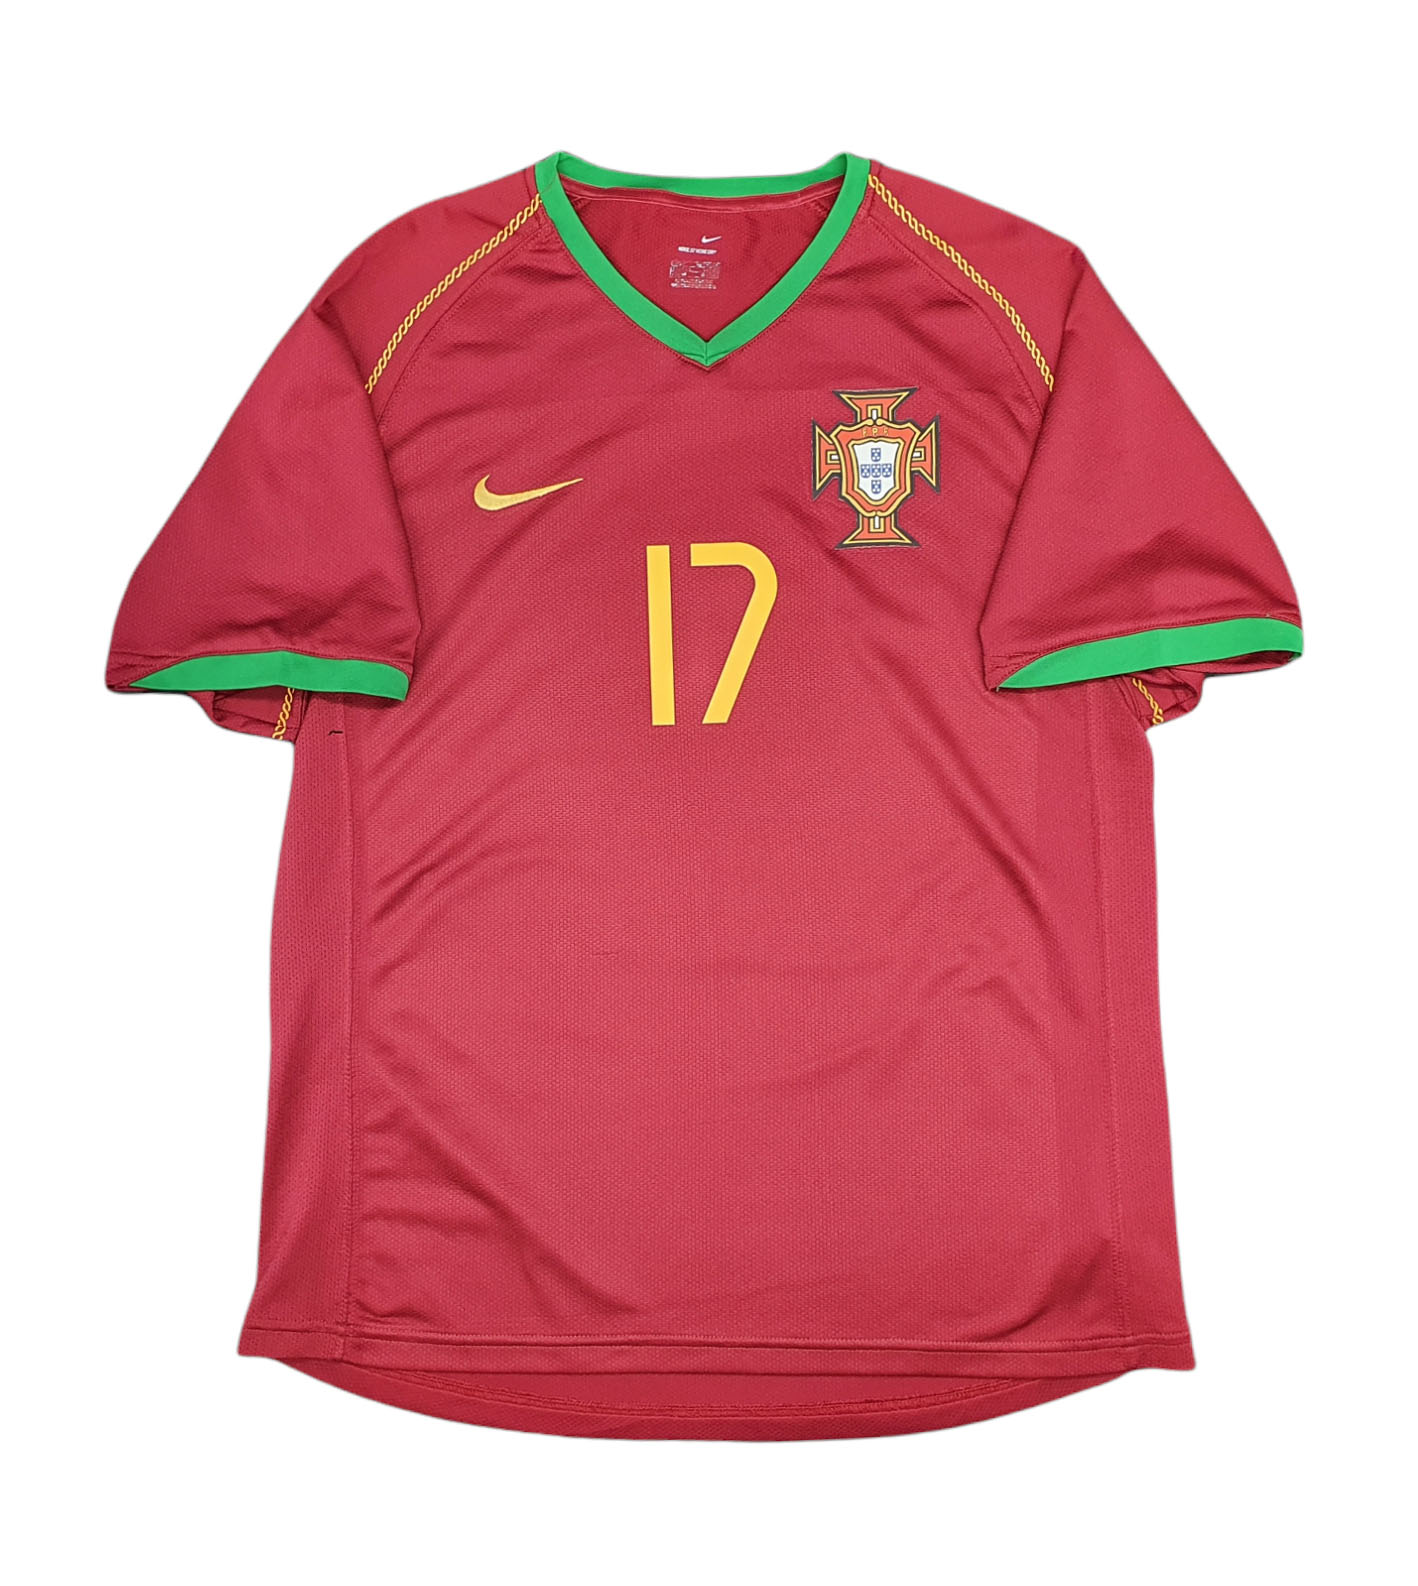 Portogallo 2006 maglia Nike Cristiano Ronaldo #17 home